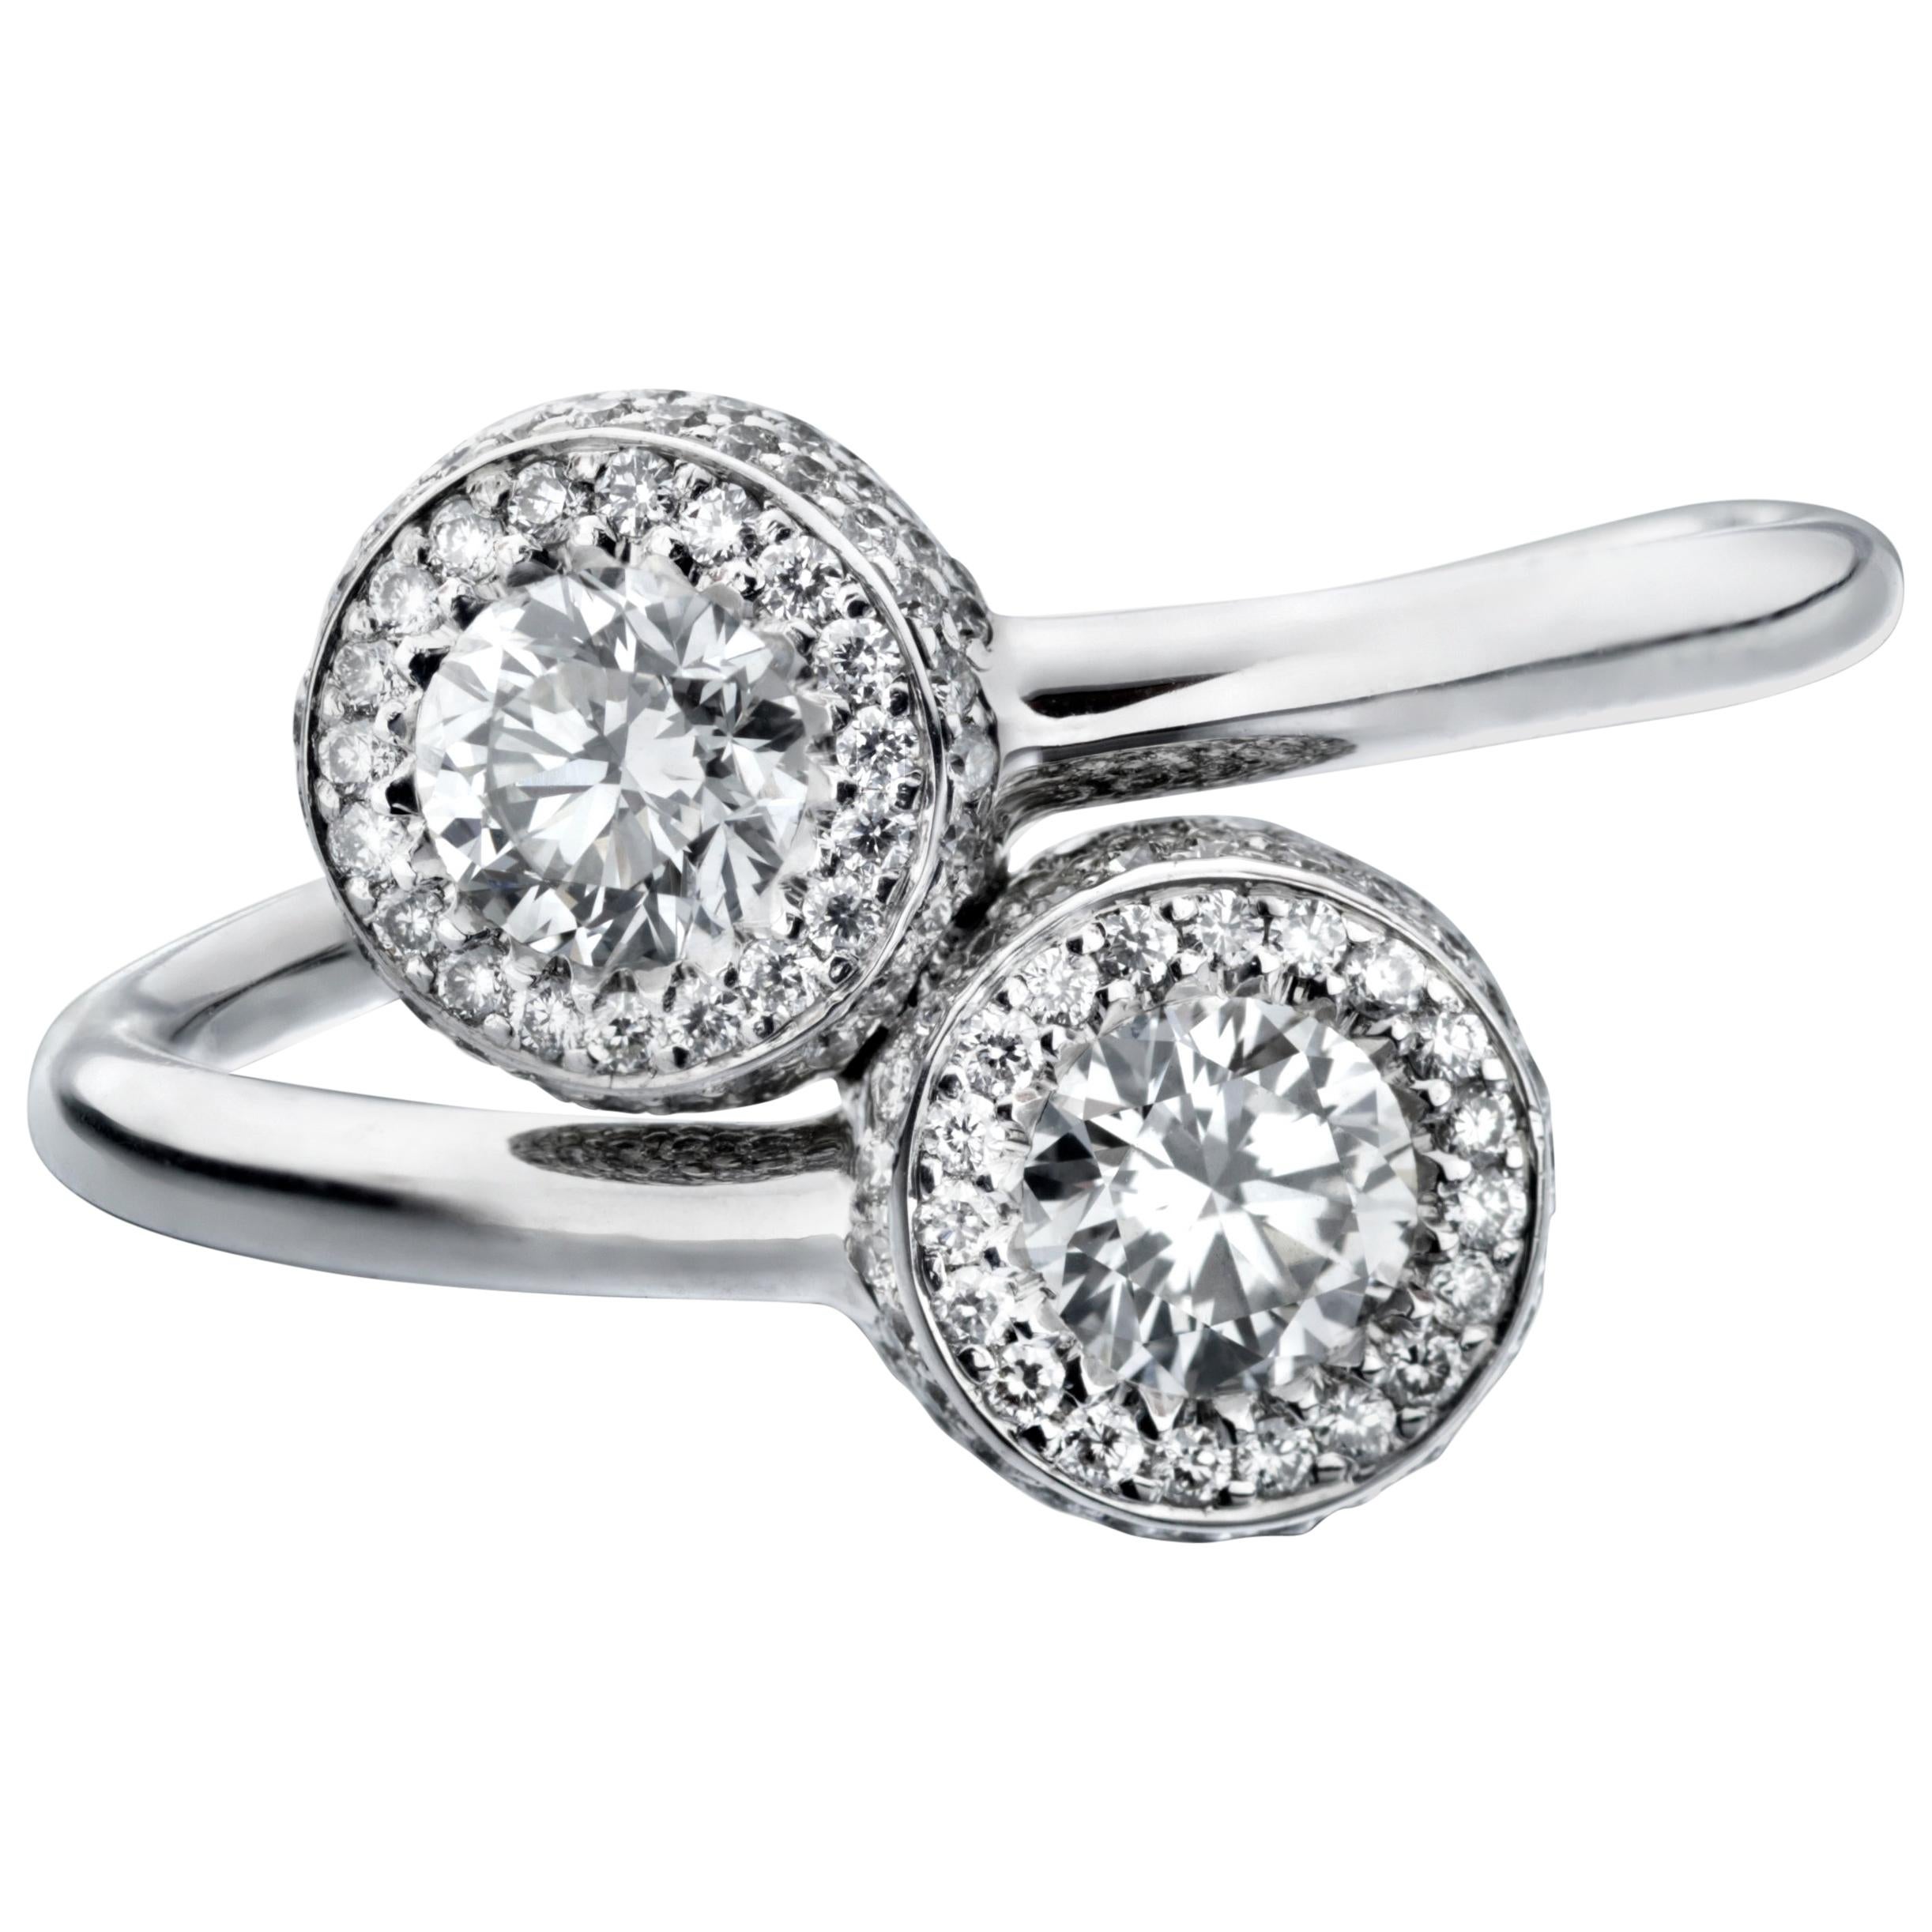 Marcel Salloum Gemini Twin Diamond Halo Ring in Platinum For Sale